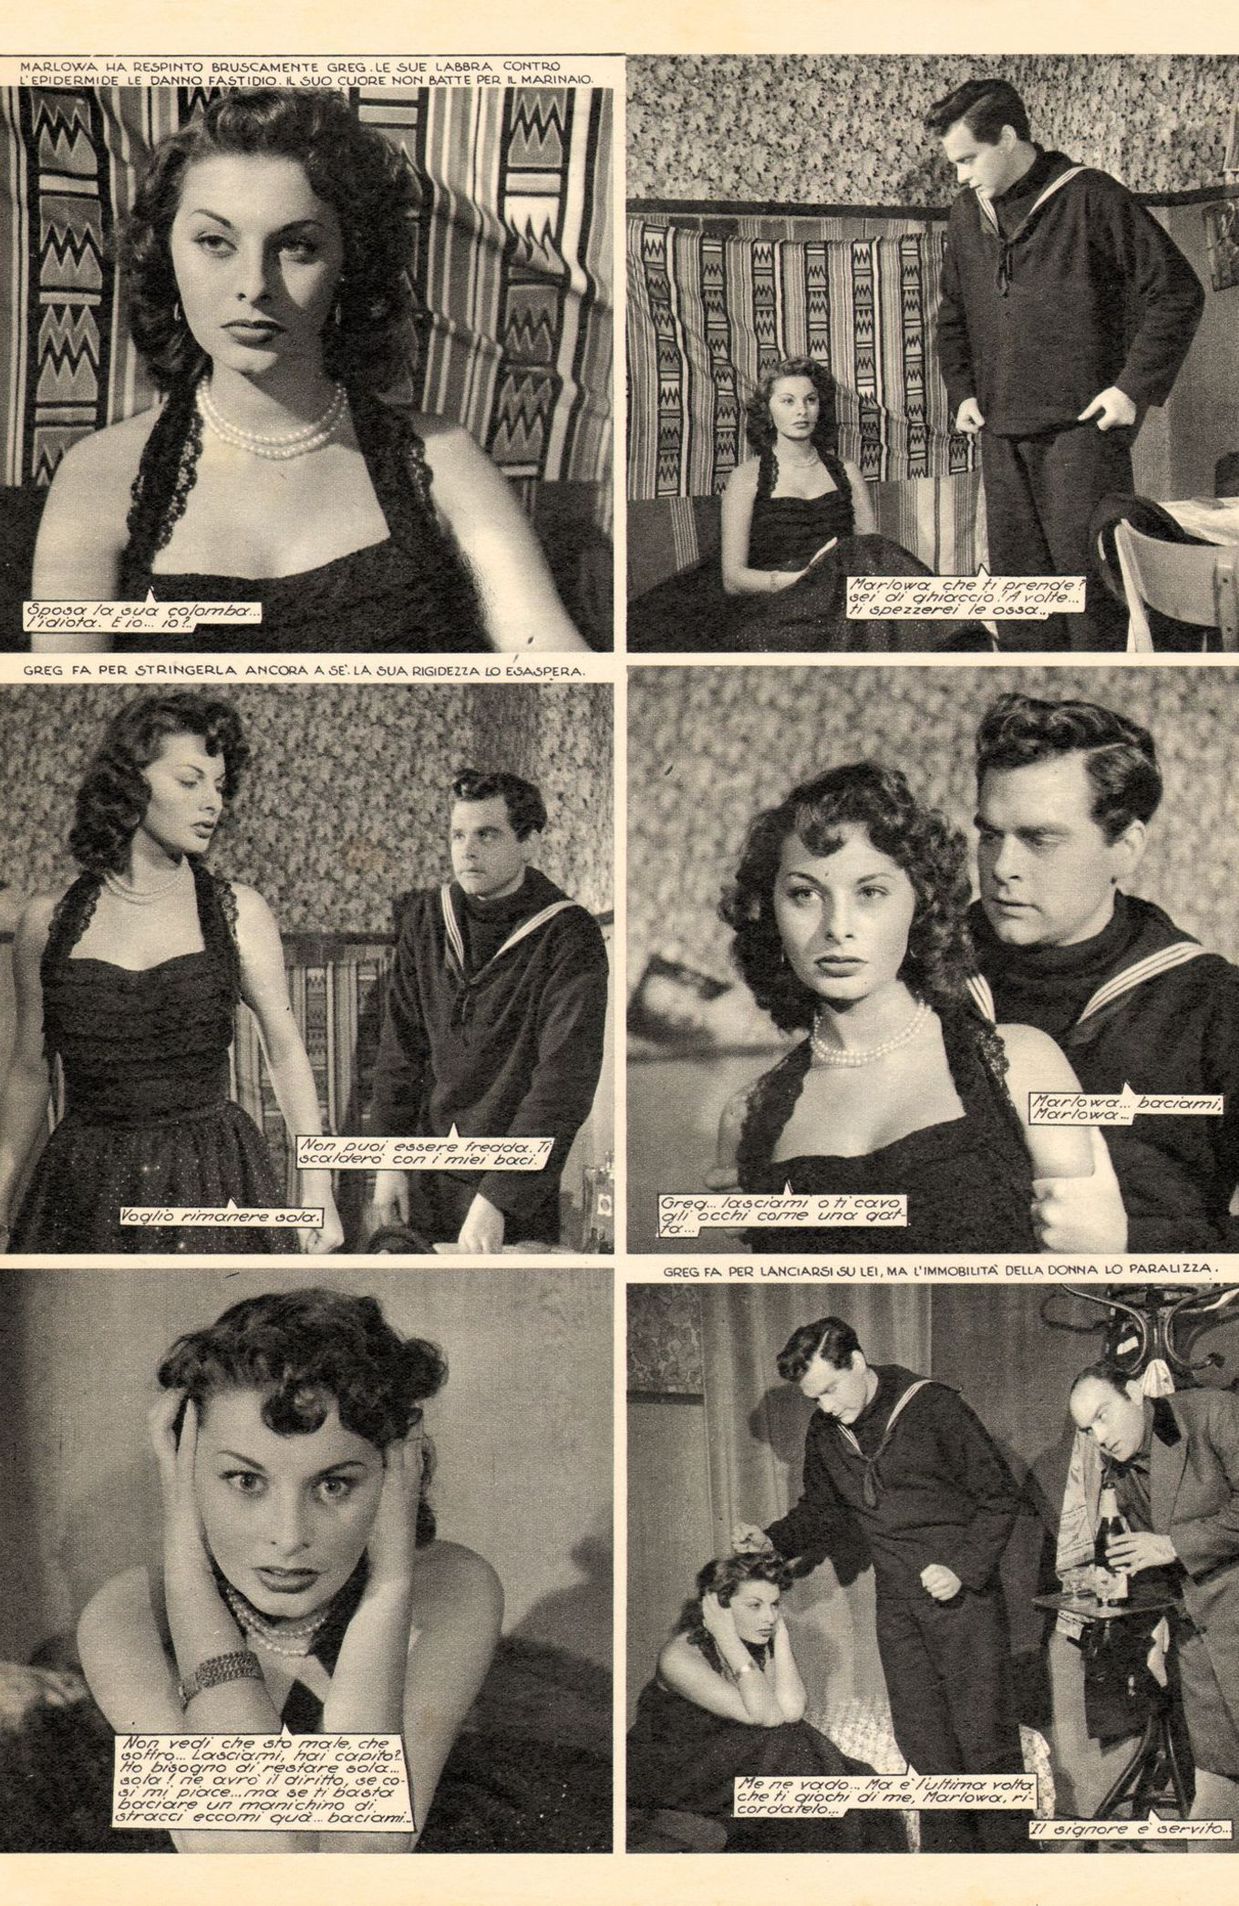 Non posso amarti" avec Sophia Loren - Sogno n°51, Rome, Italie, 1950.